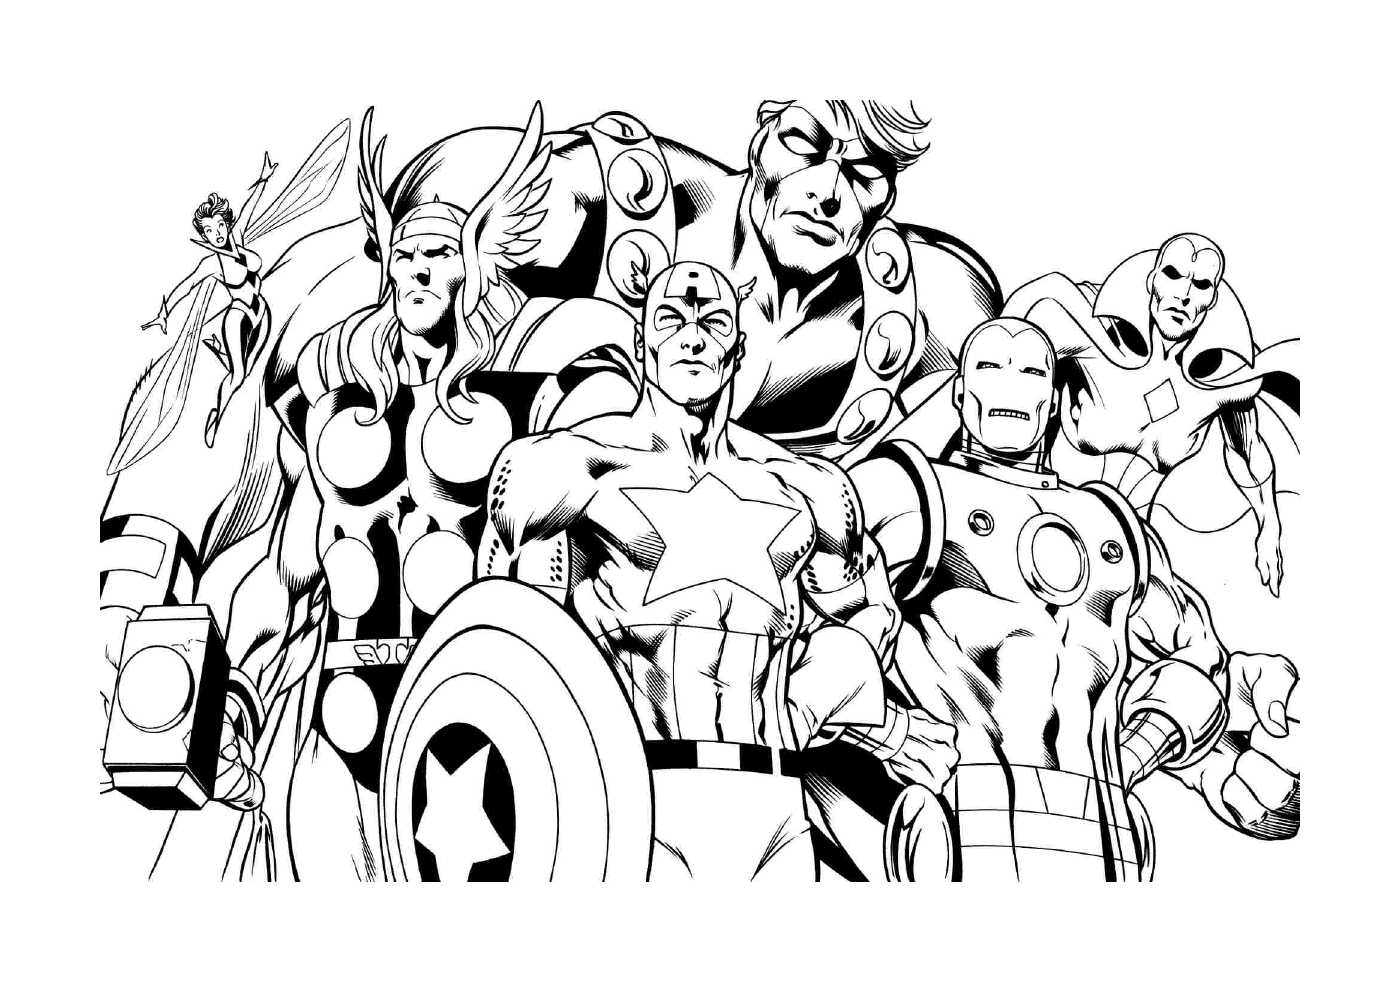   Un groupe de super-héros se tenant côte à côte pour les petits enfants 